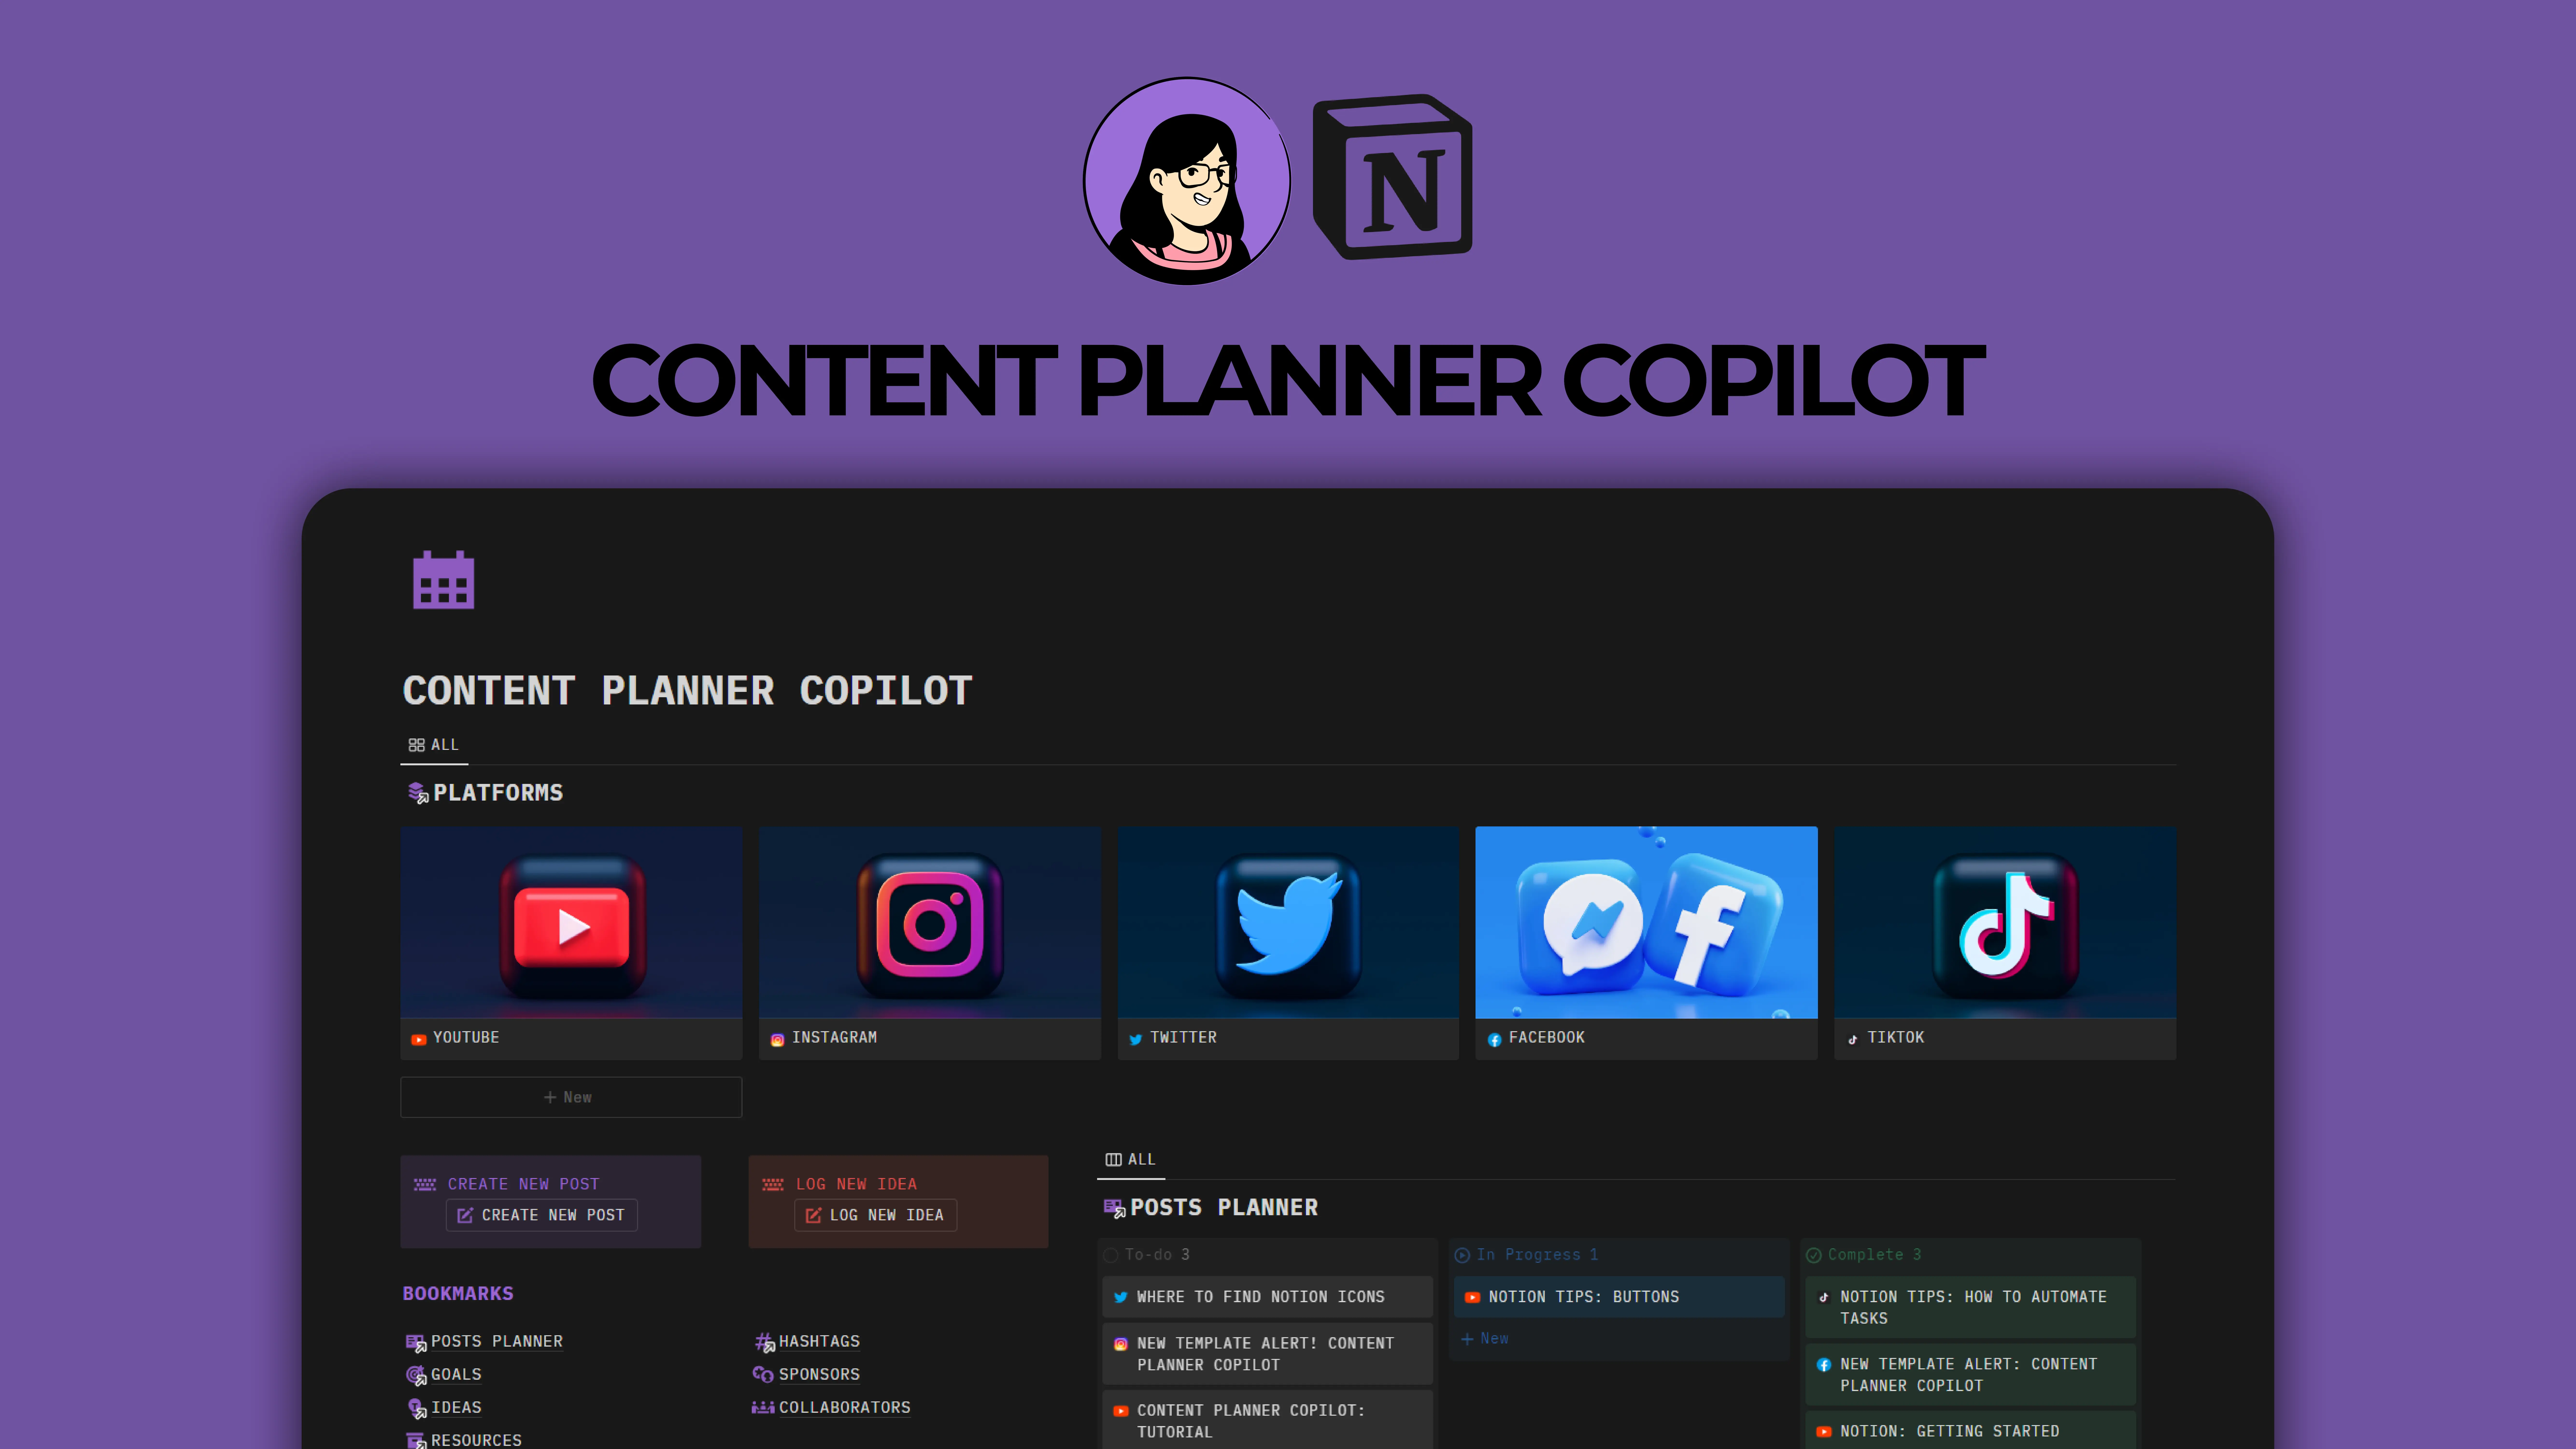 Notion Content Planner Copilot image